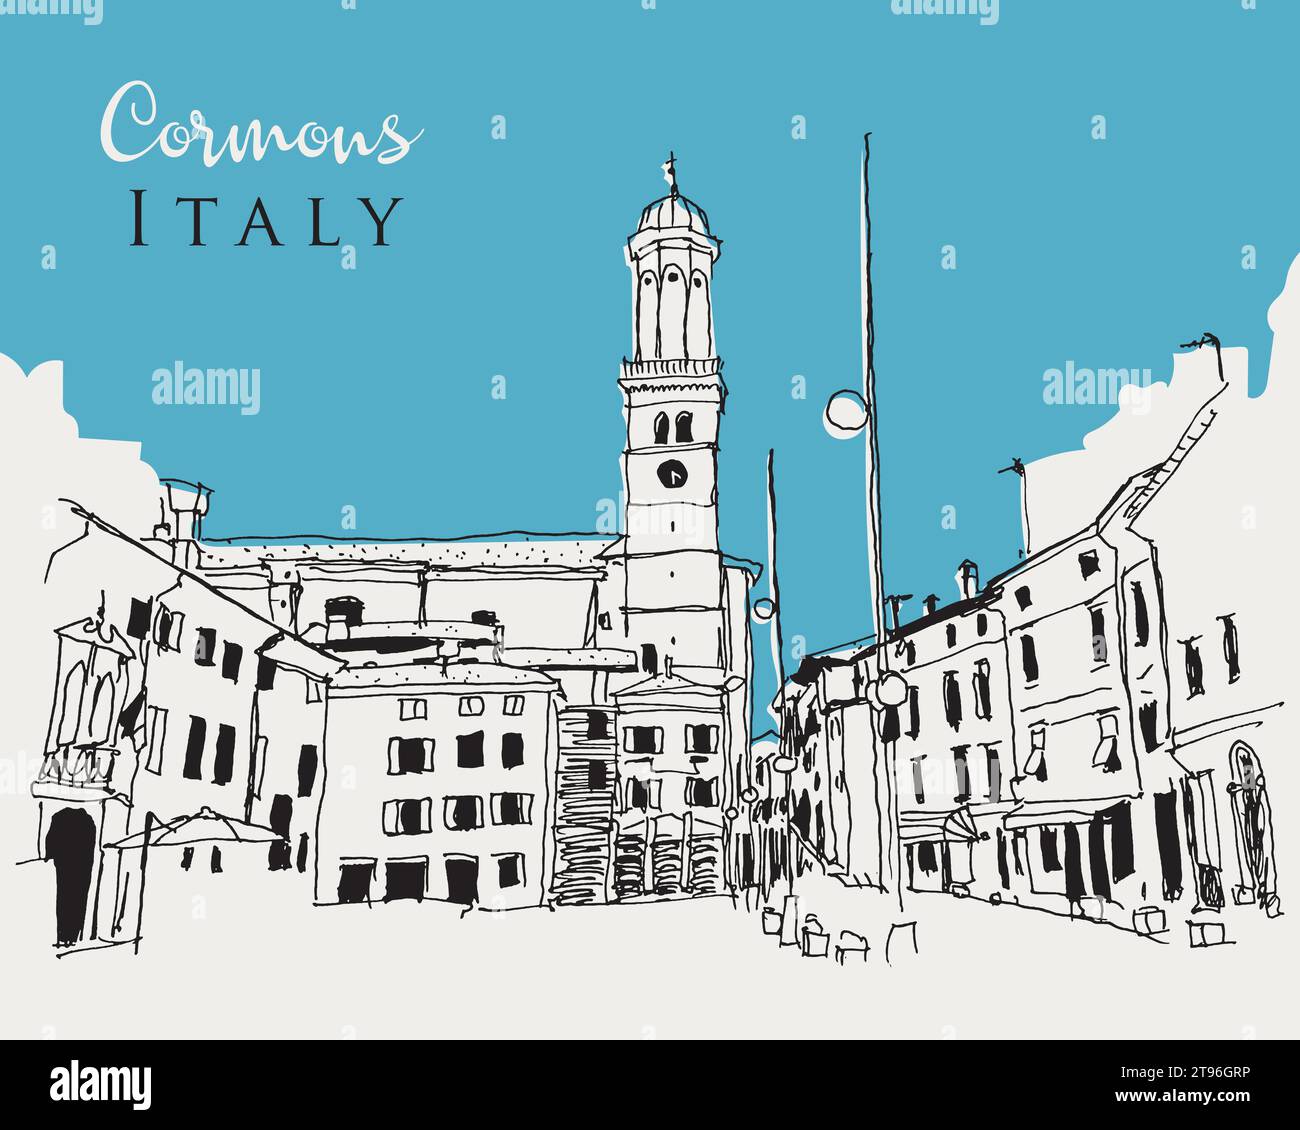 Illustration vectorielle dessinée à la main de Cormons, une comune dans la région italienne Friuli-Venezia Giulia Illustration de Vecteur